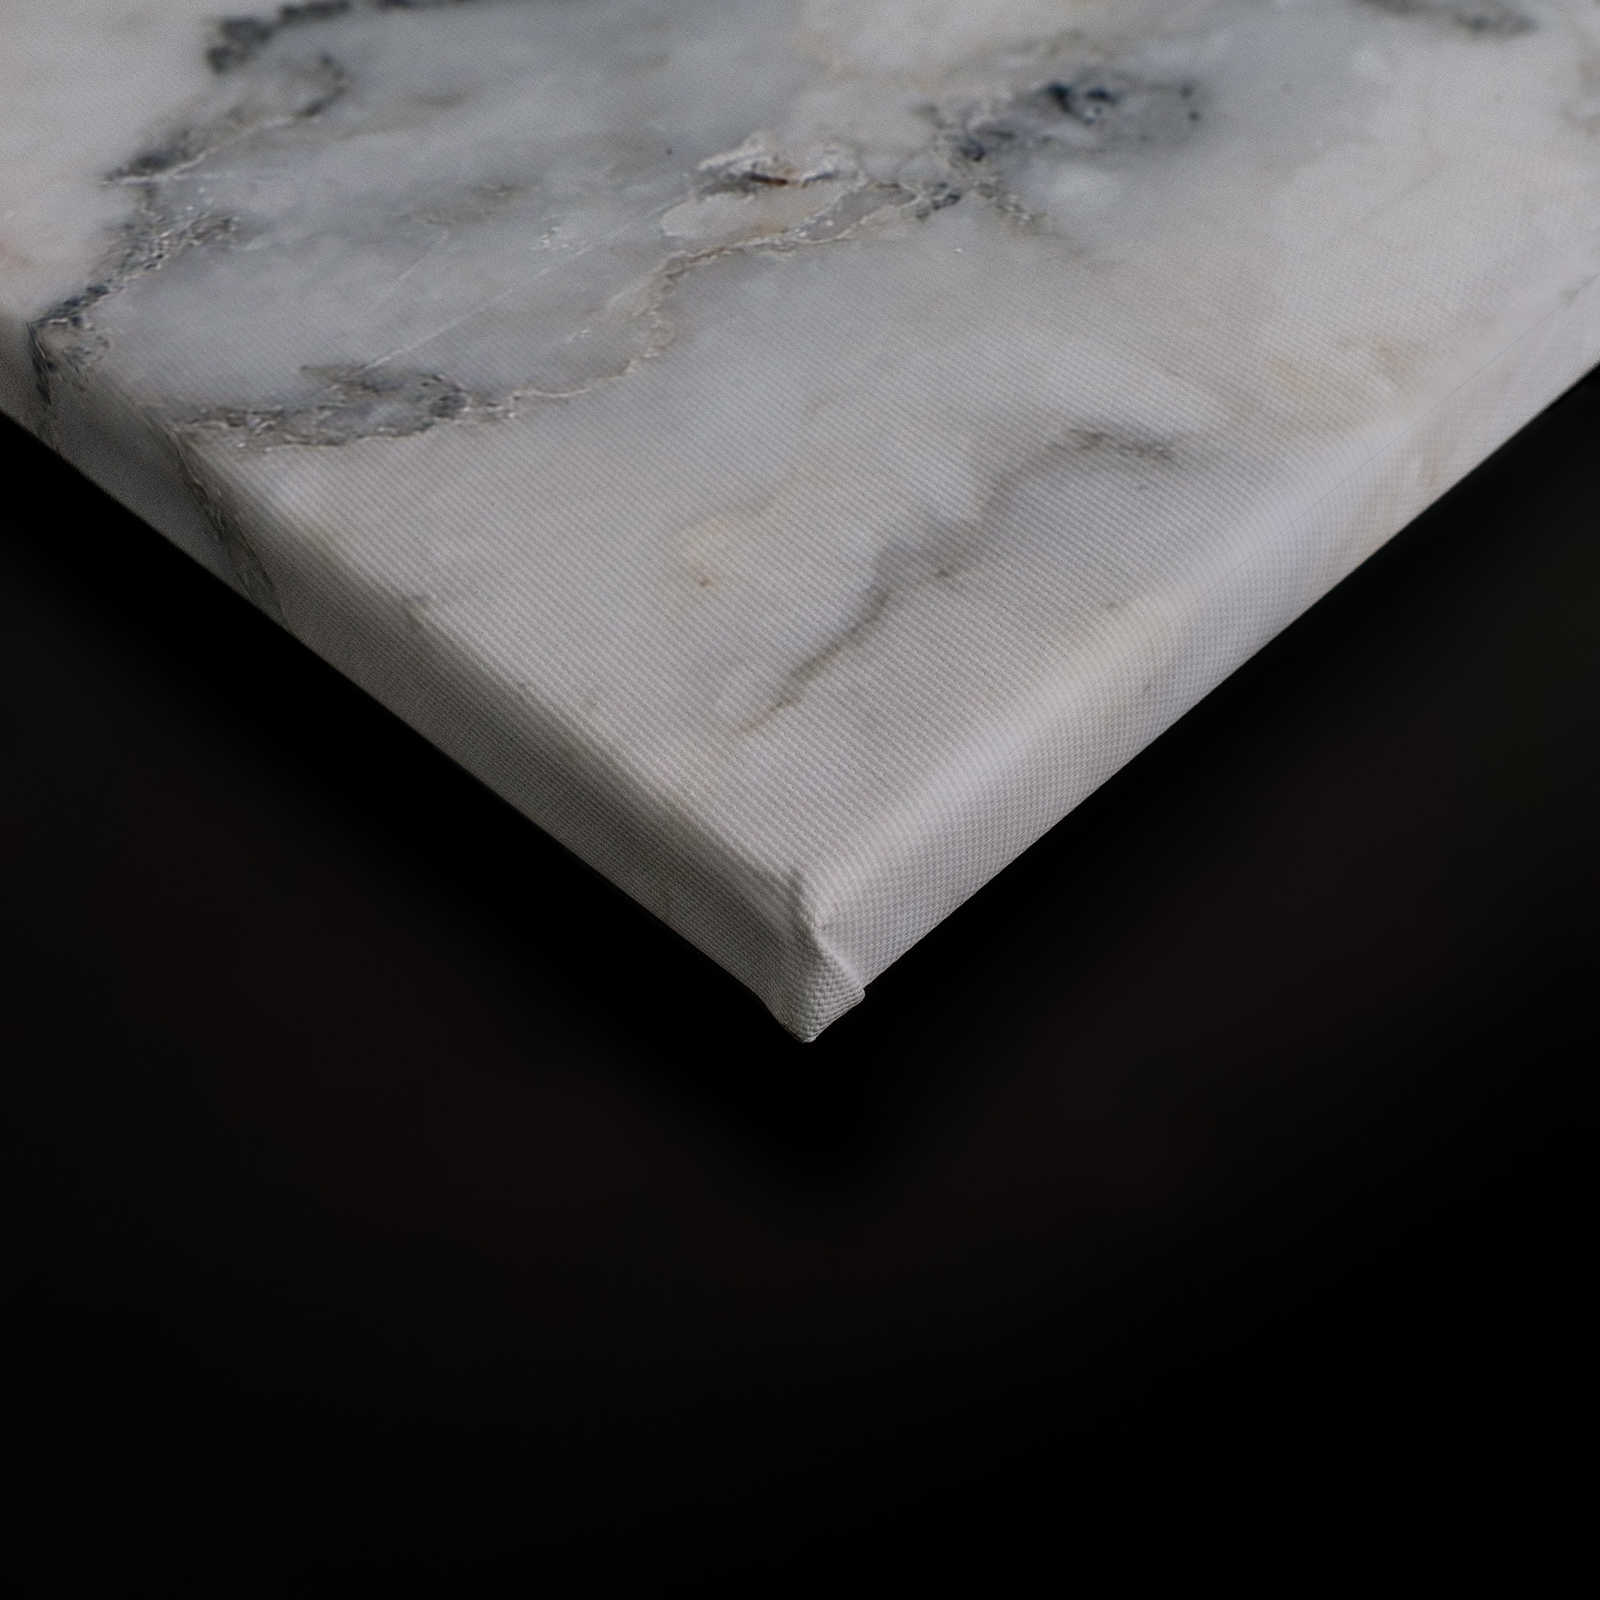             Pittura su tela realistica e marmo di grandi dimensioni - 0,90 m x 0,60 m
        